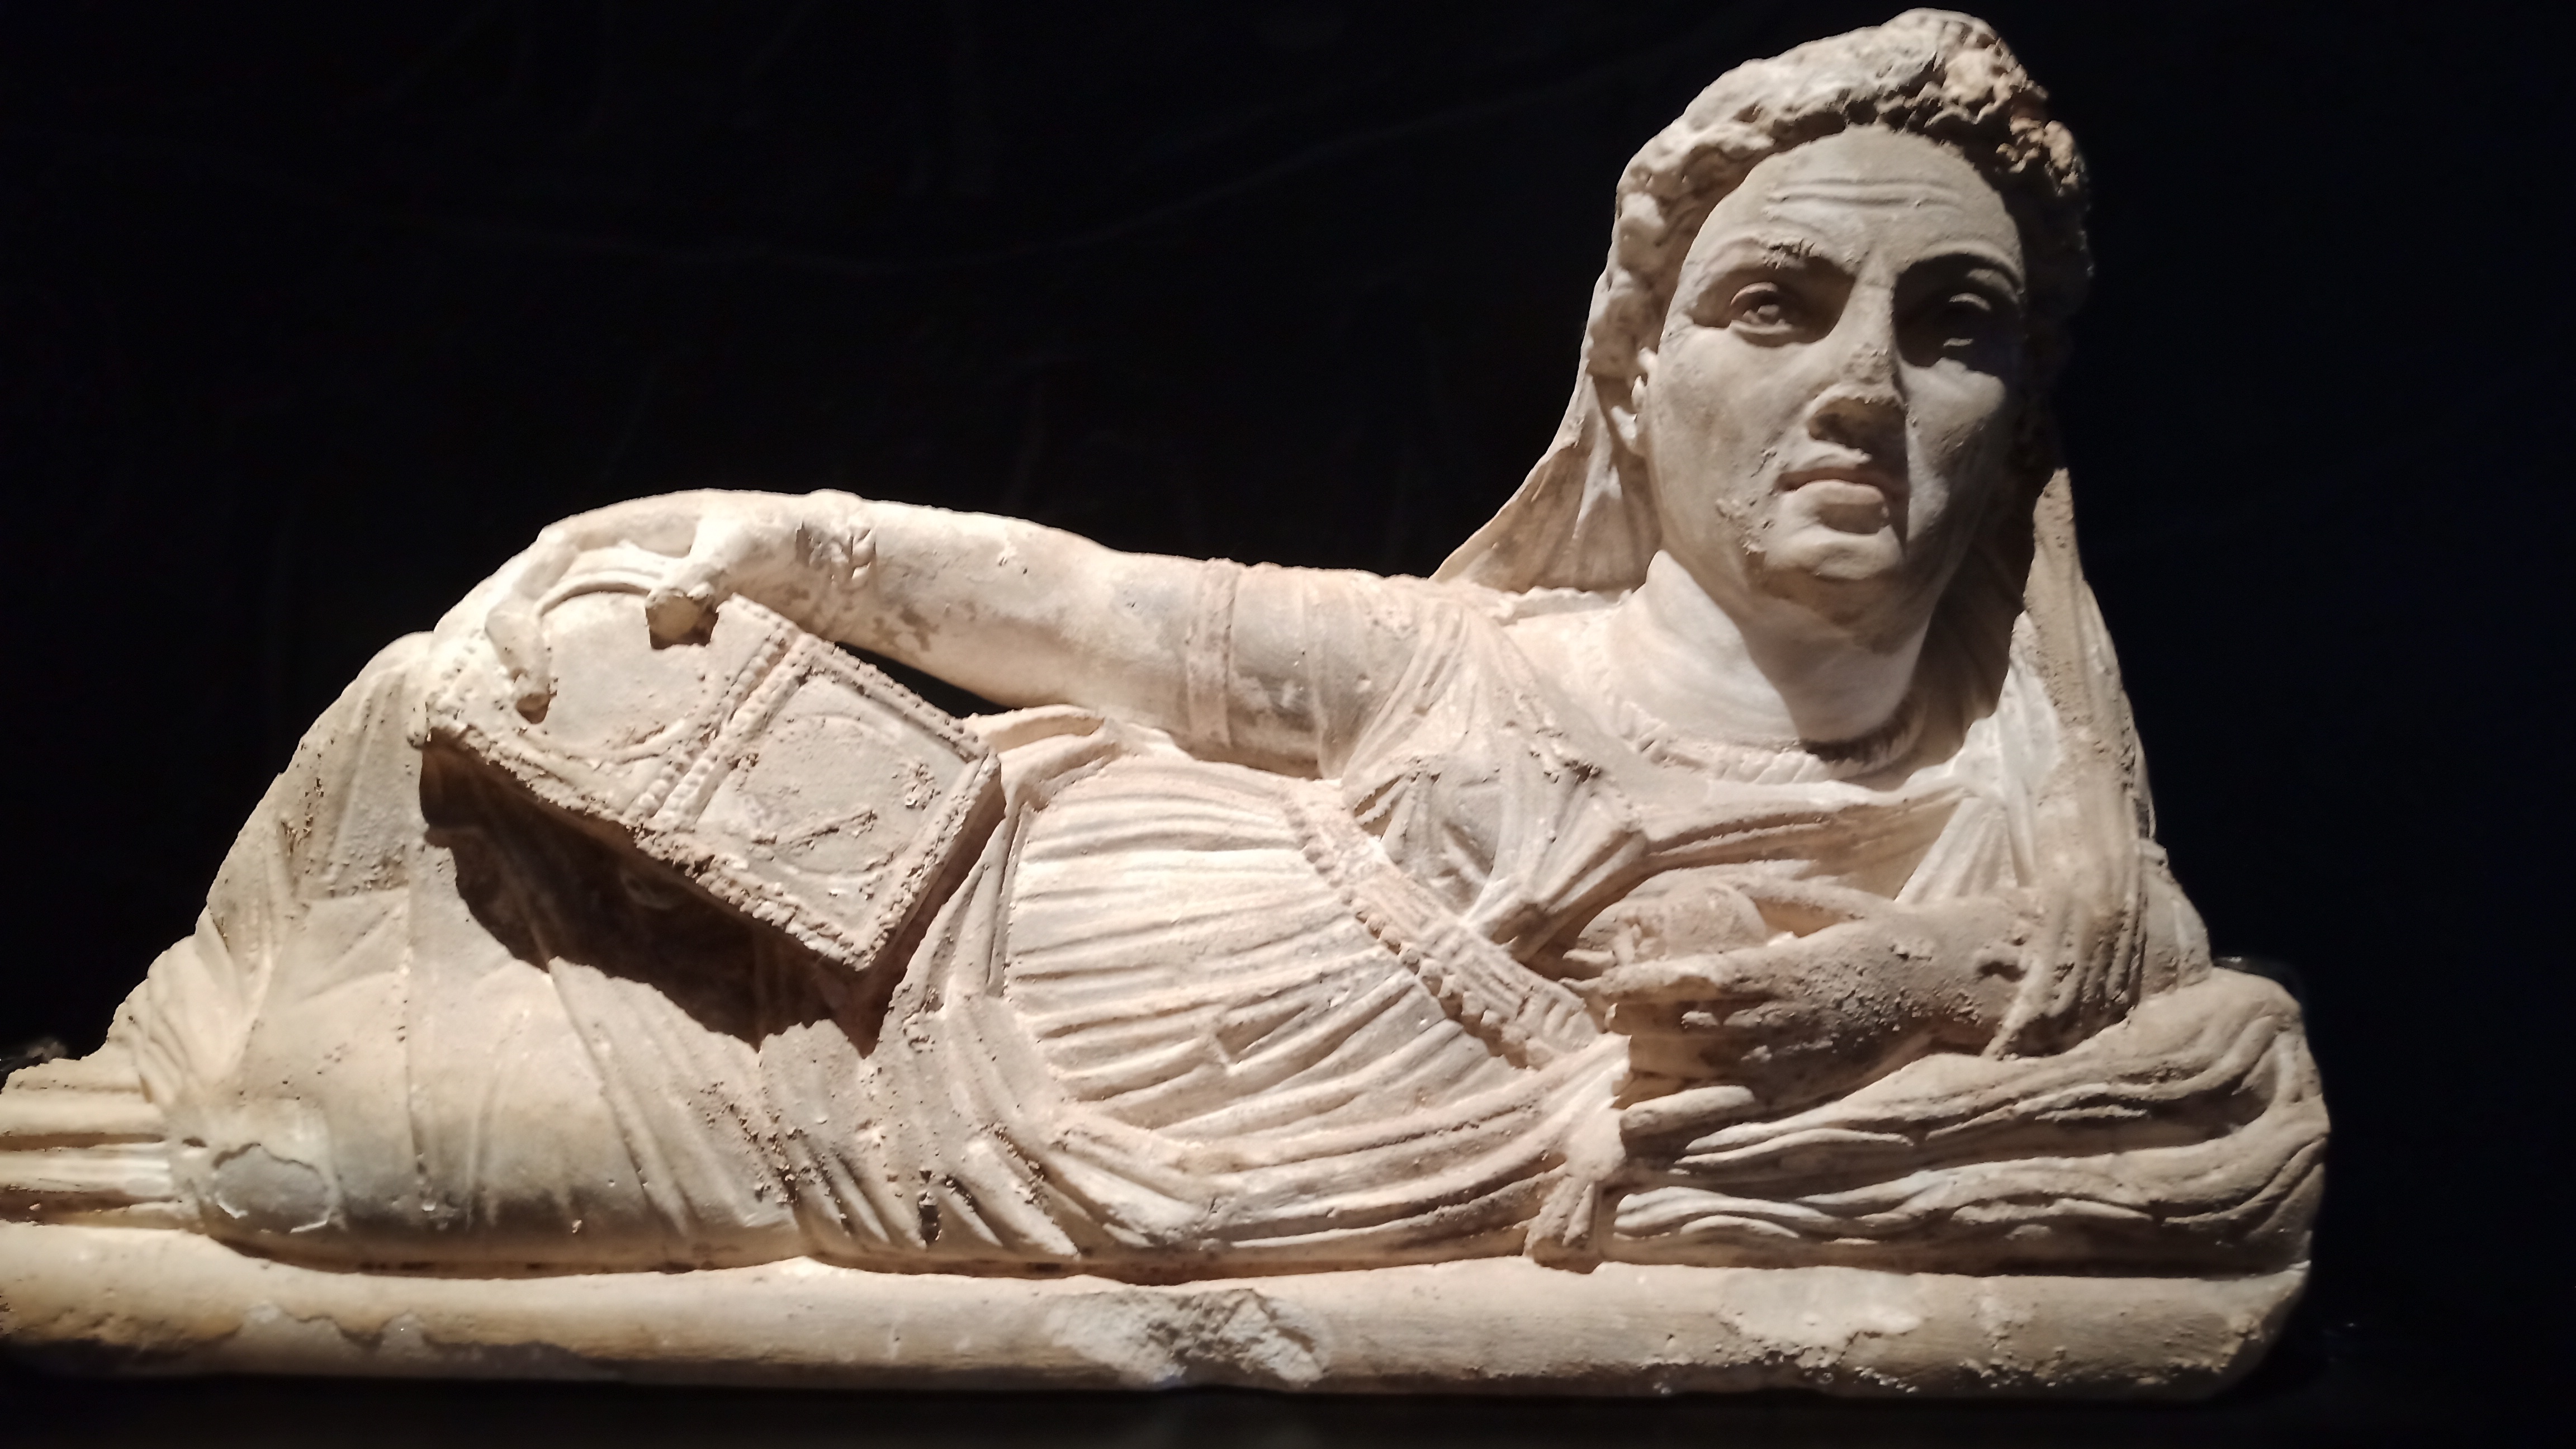 La mujer en la cultura etrusca disponía de los mismos privilegios que el hombre. Foto Navarro